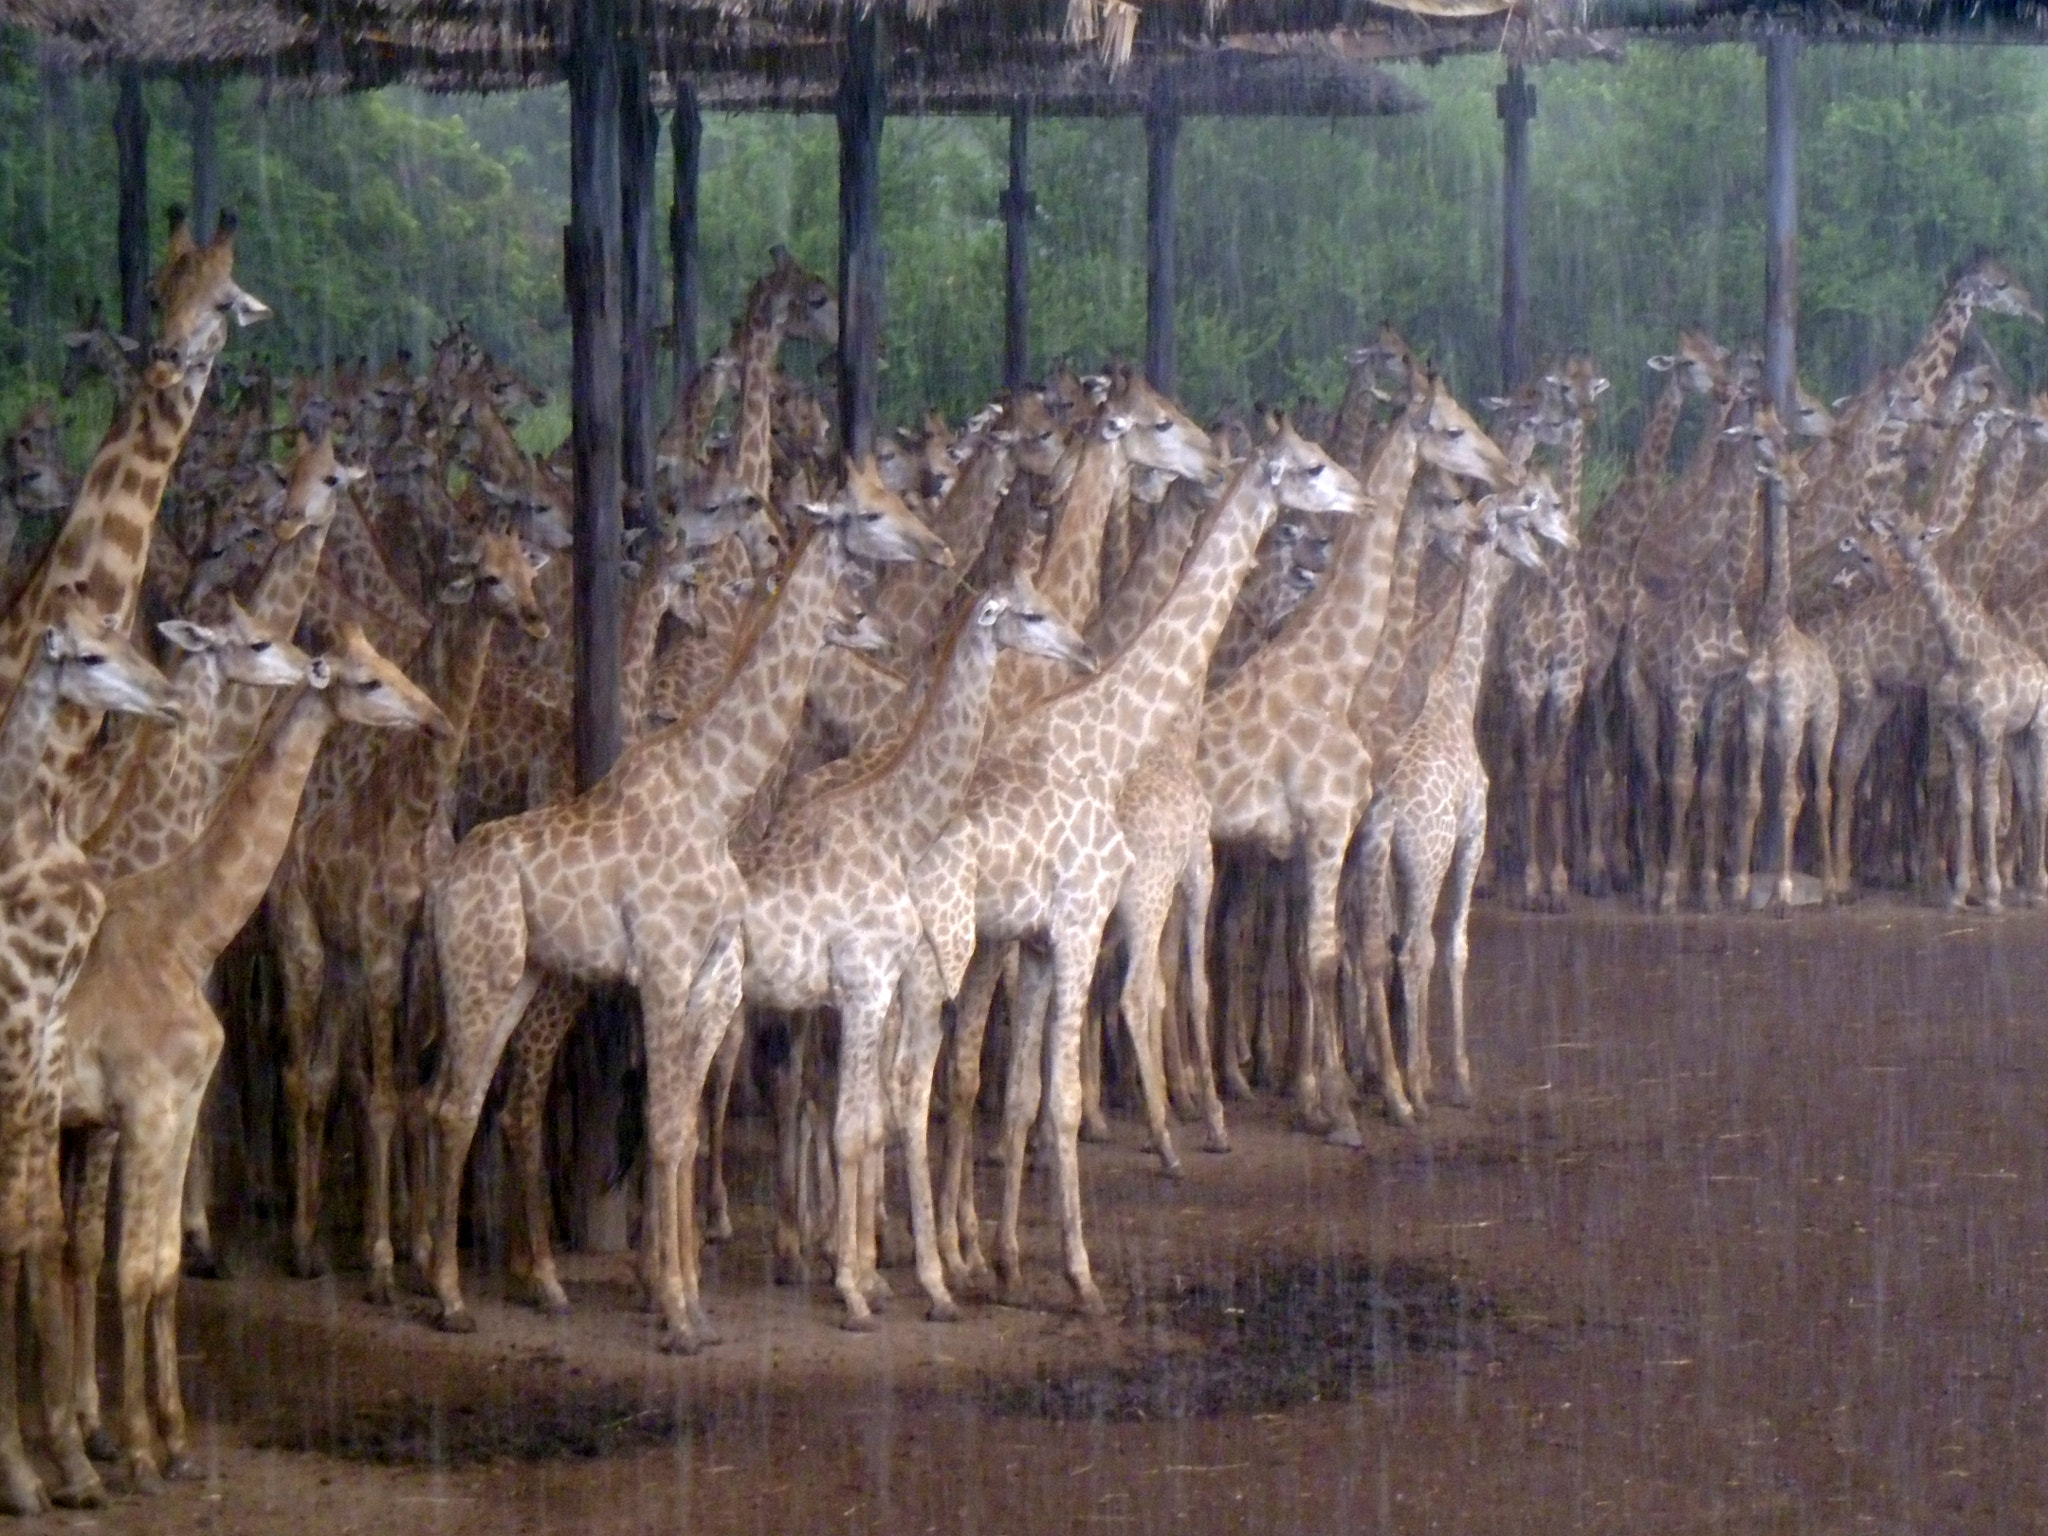 Panasonic DMC-LS5 sample photo. Giraffes in rain photography